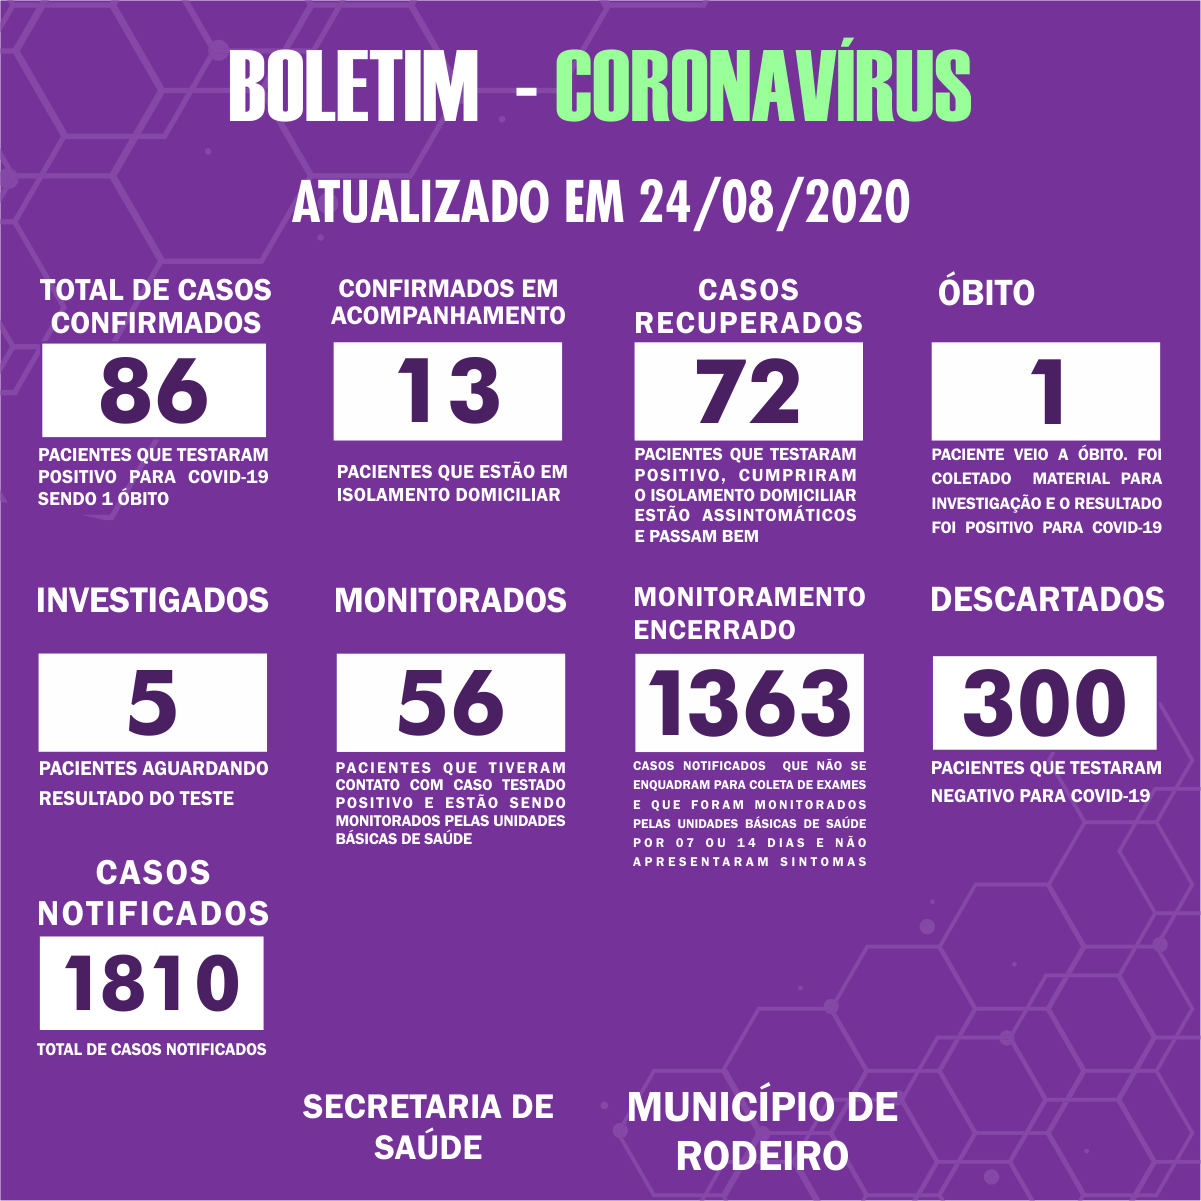 Boletim Epidemiológico do Município de Rodeiro sobre coronavírus, atualizado em 24/08/2020